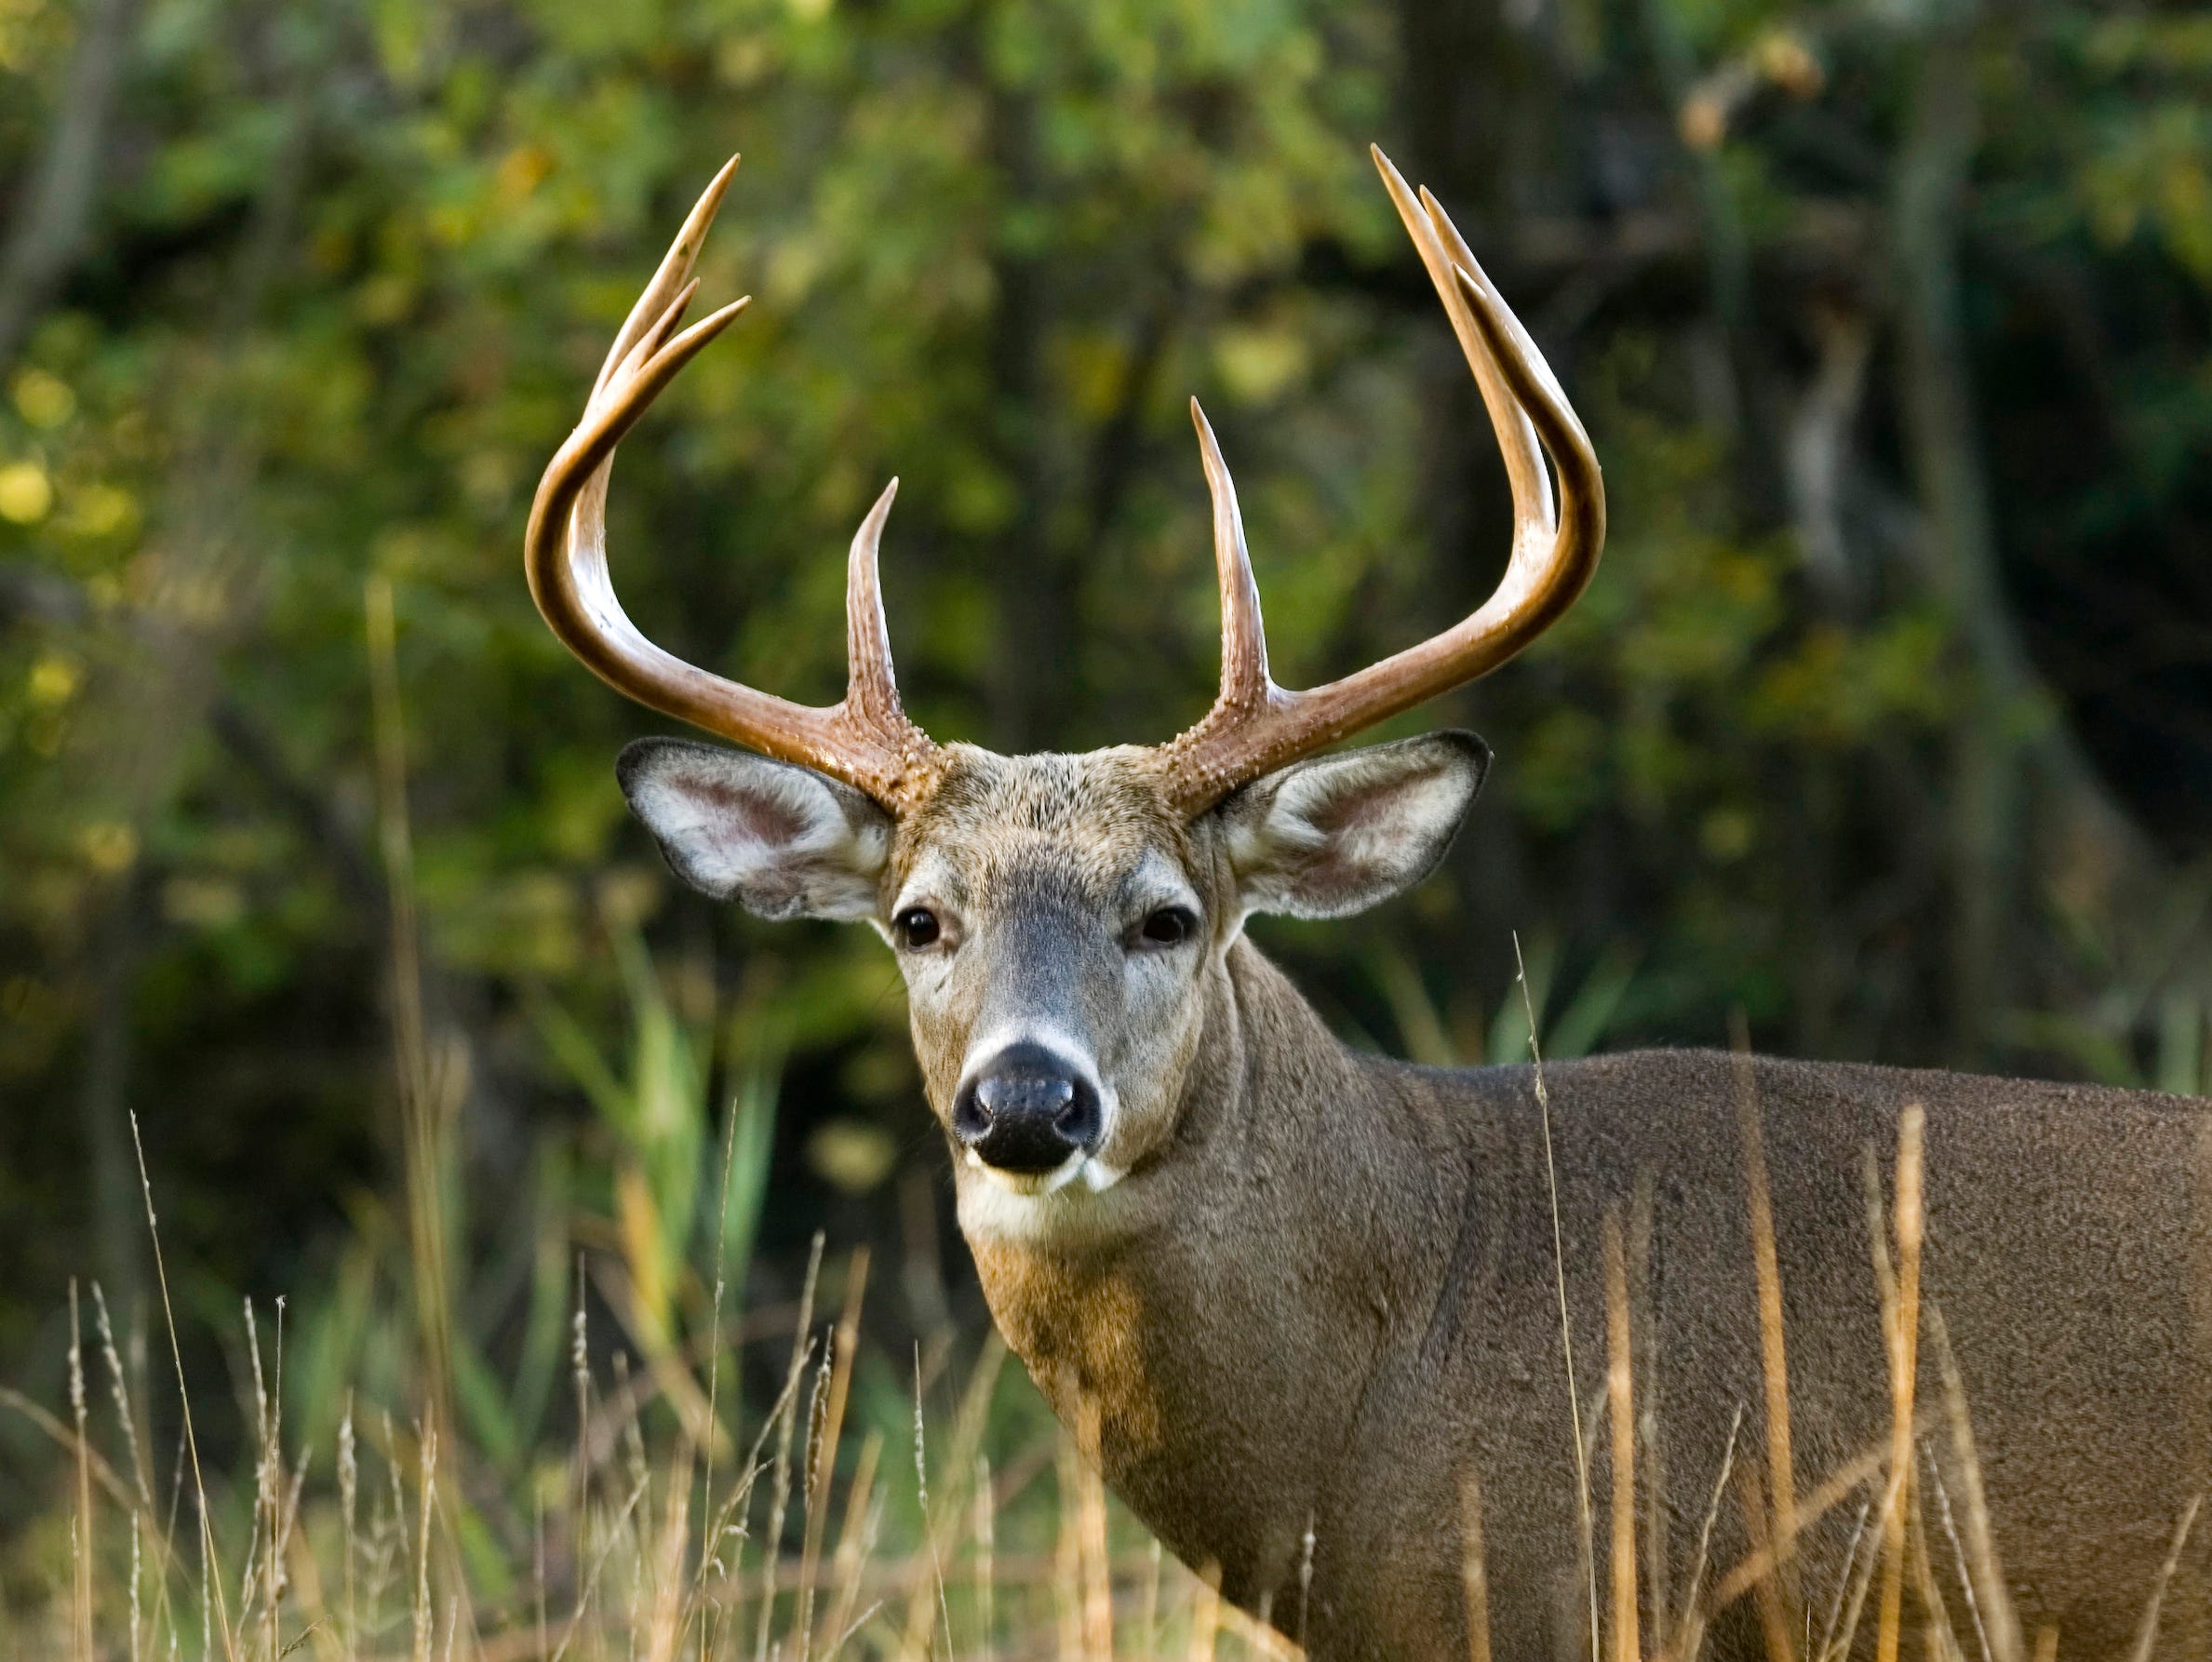 Deer Feeding Chart Alabama 2018